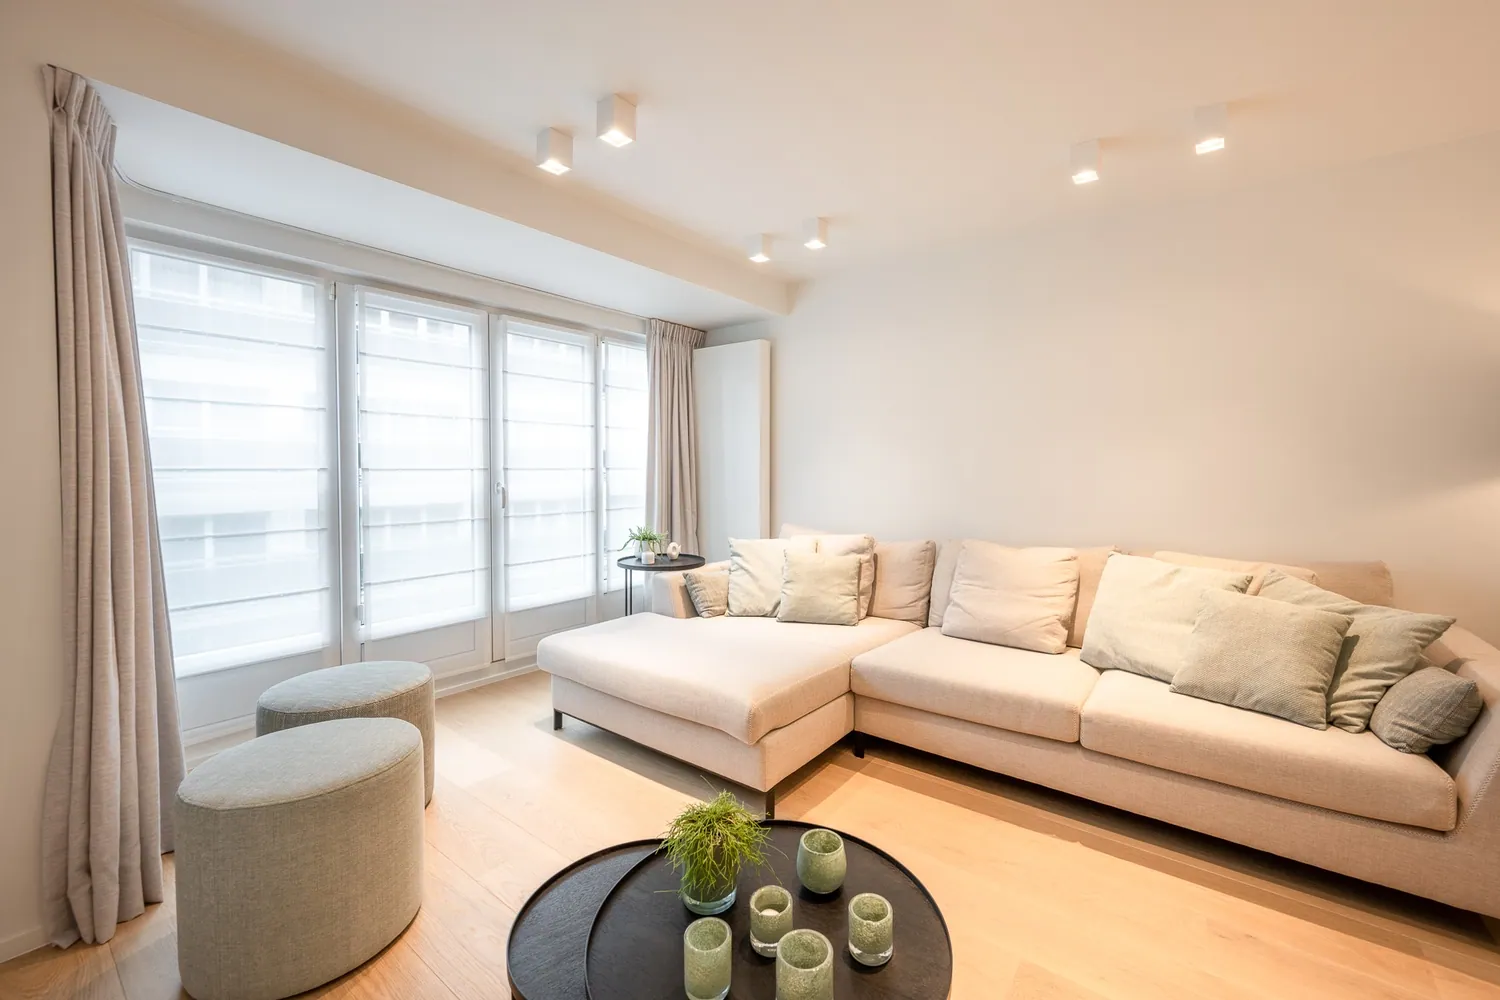 Appartement de 2 chambres entièrement et élégamment rénové avec une TERRASSE spacieuse située près de la Dumortierlaan.